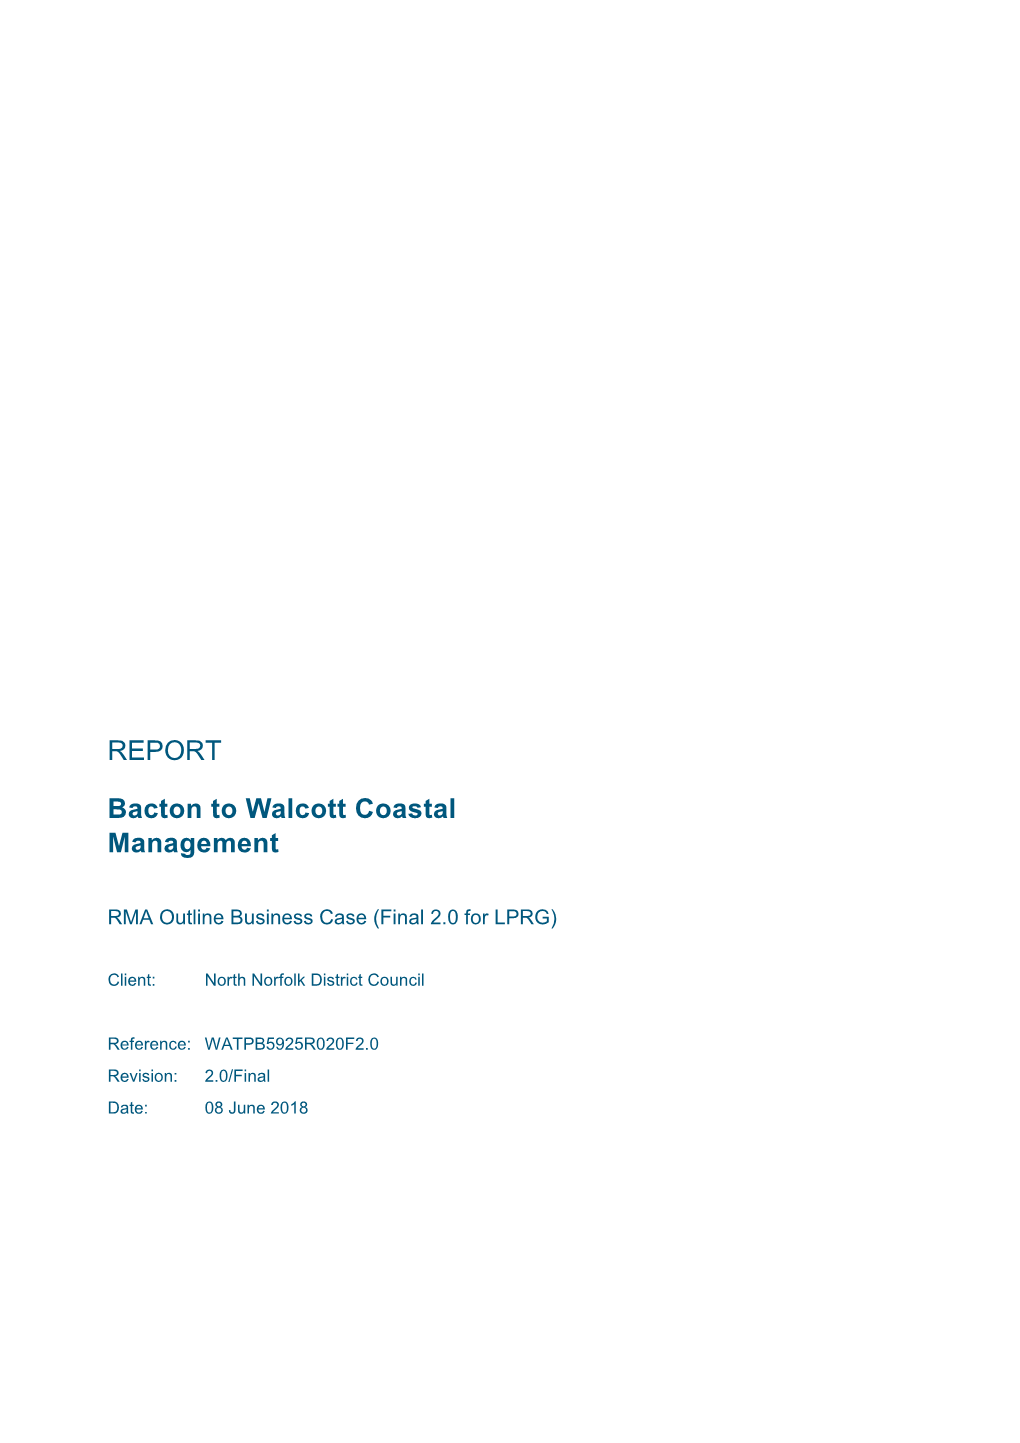 REPORT Bacton to Walcott Coastal Management